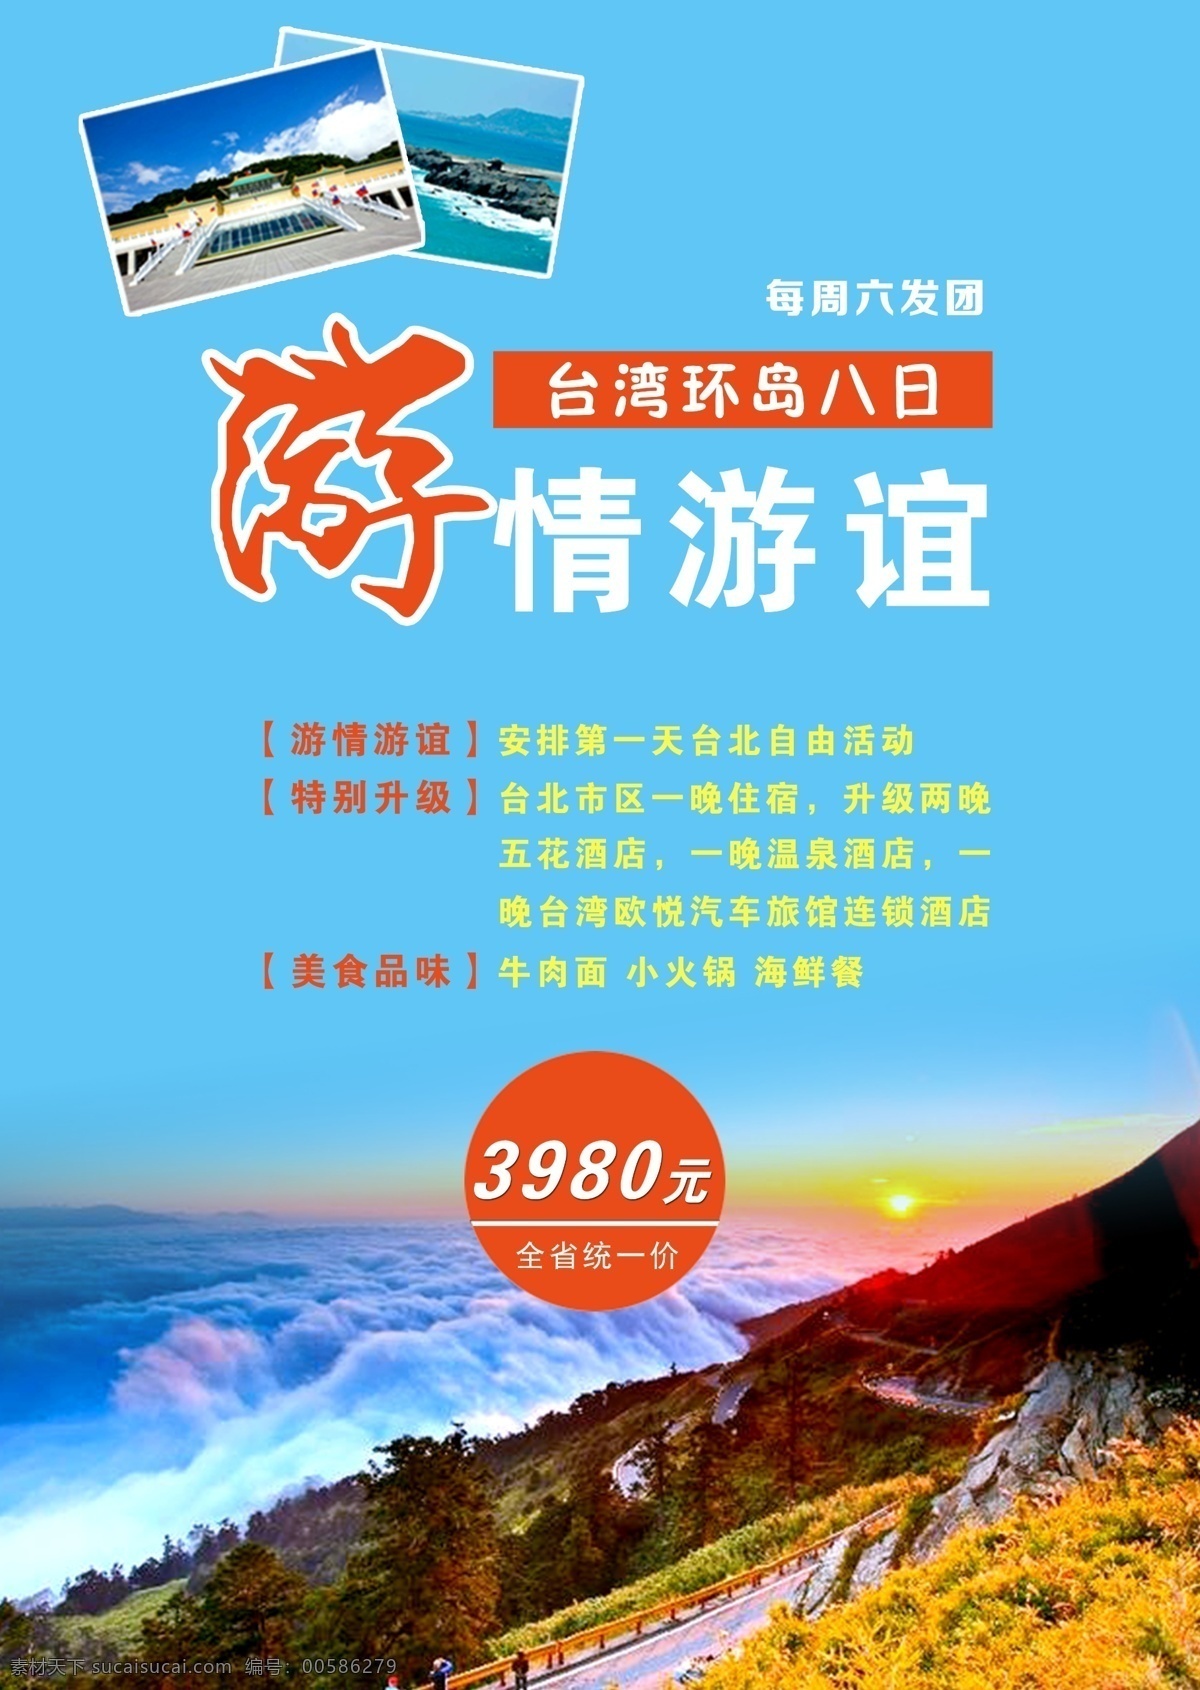 台湾 环岛 八日 游 台湾海报 旅游 台湾素材 景点 青色 天蓝色